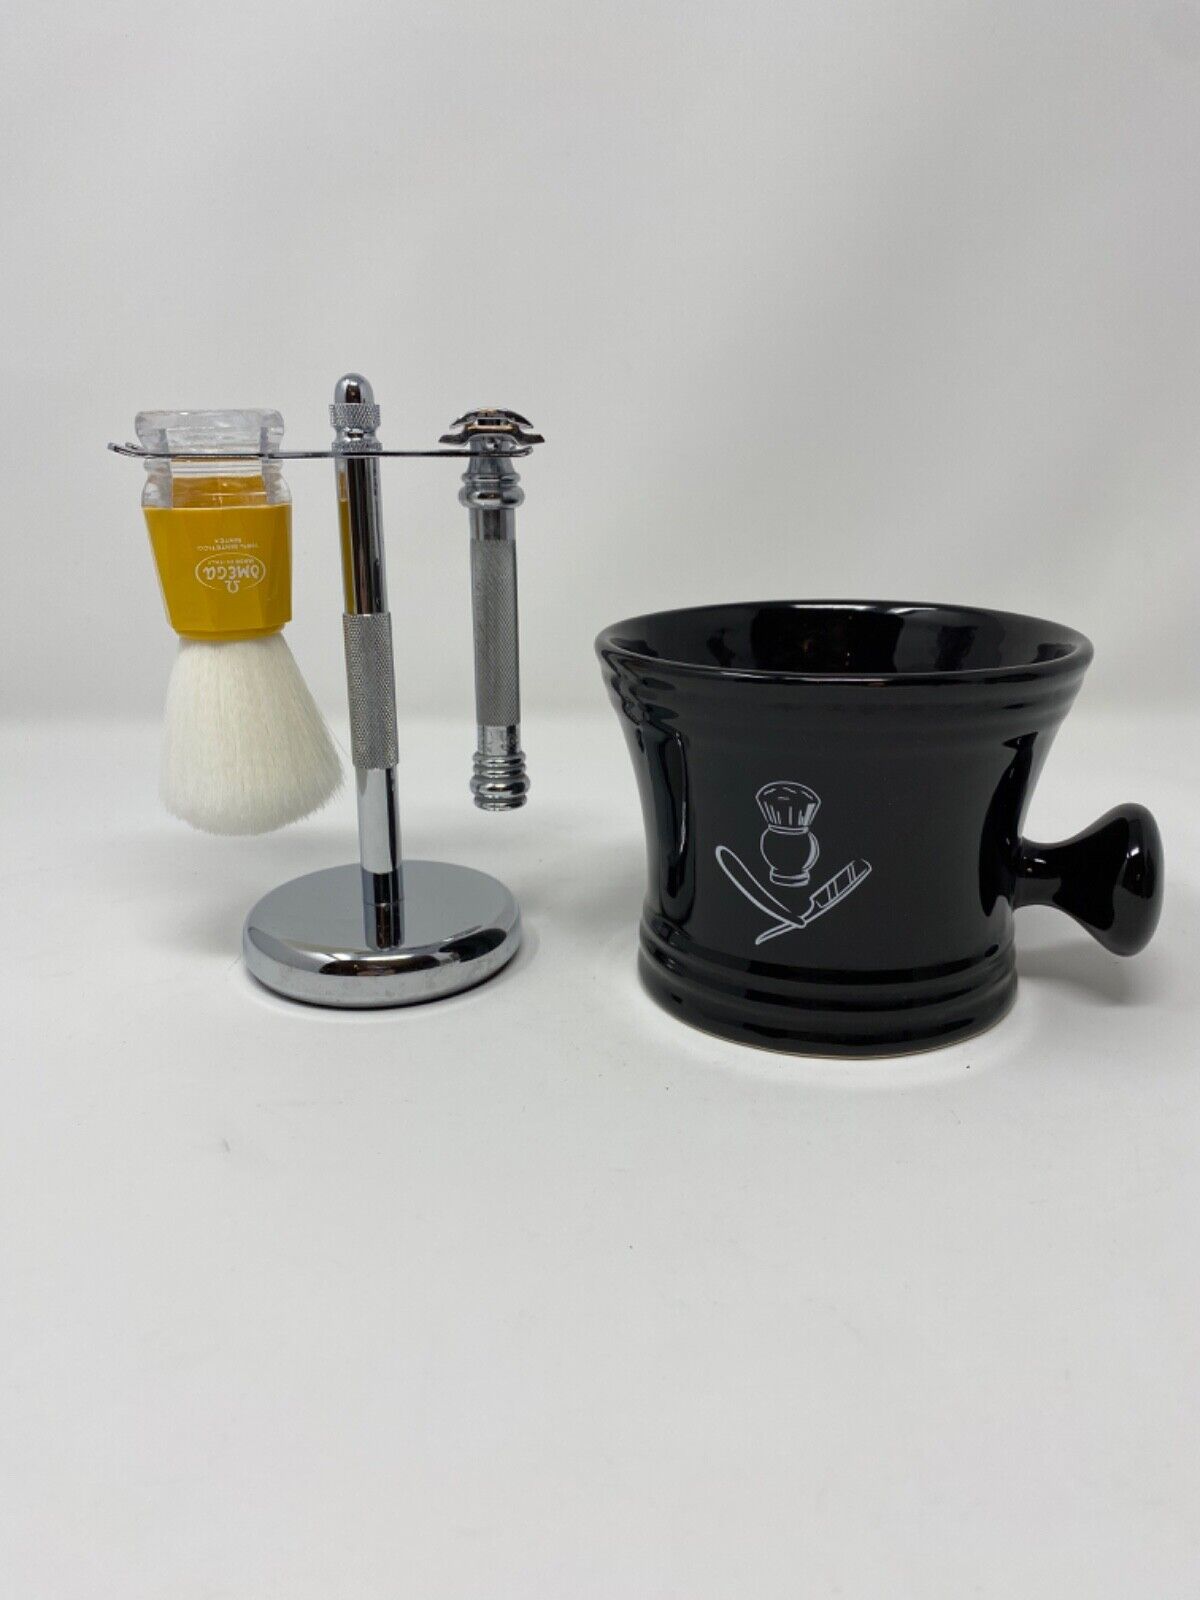 Men’s Shaving Set MERKUR Solingen Safety Razor OMEGA Brush Stand Soap Cup Mug